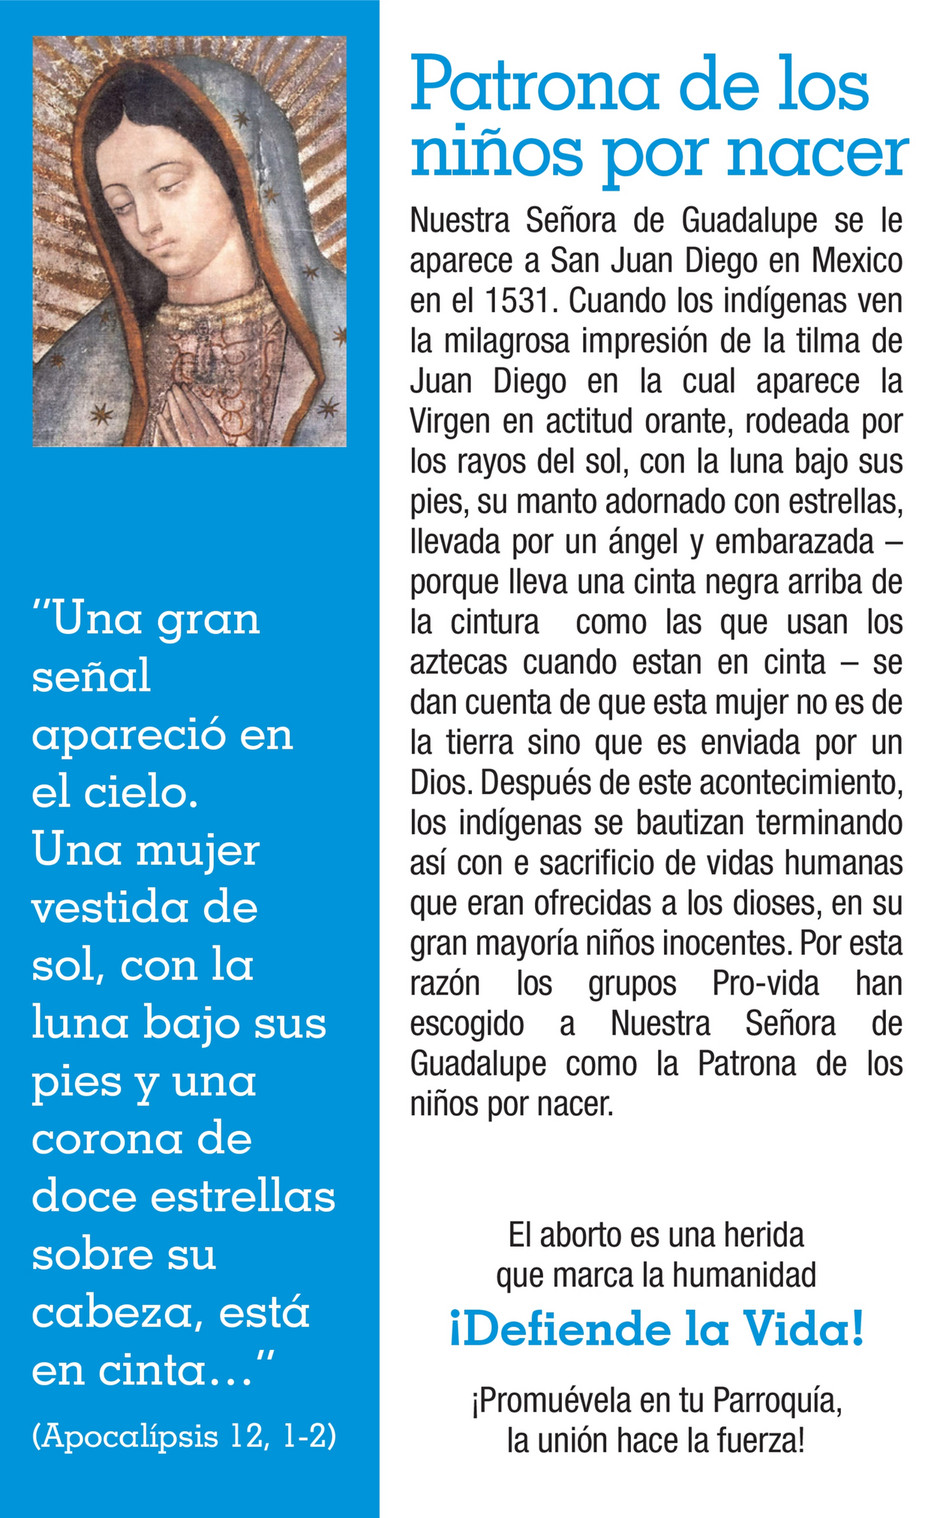 Arquidiócesis de Medellín - Novena a la Vida 2016 - Página 4-5 - Created  with 